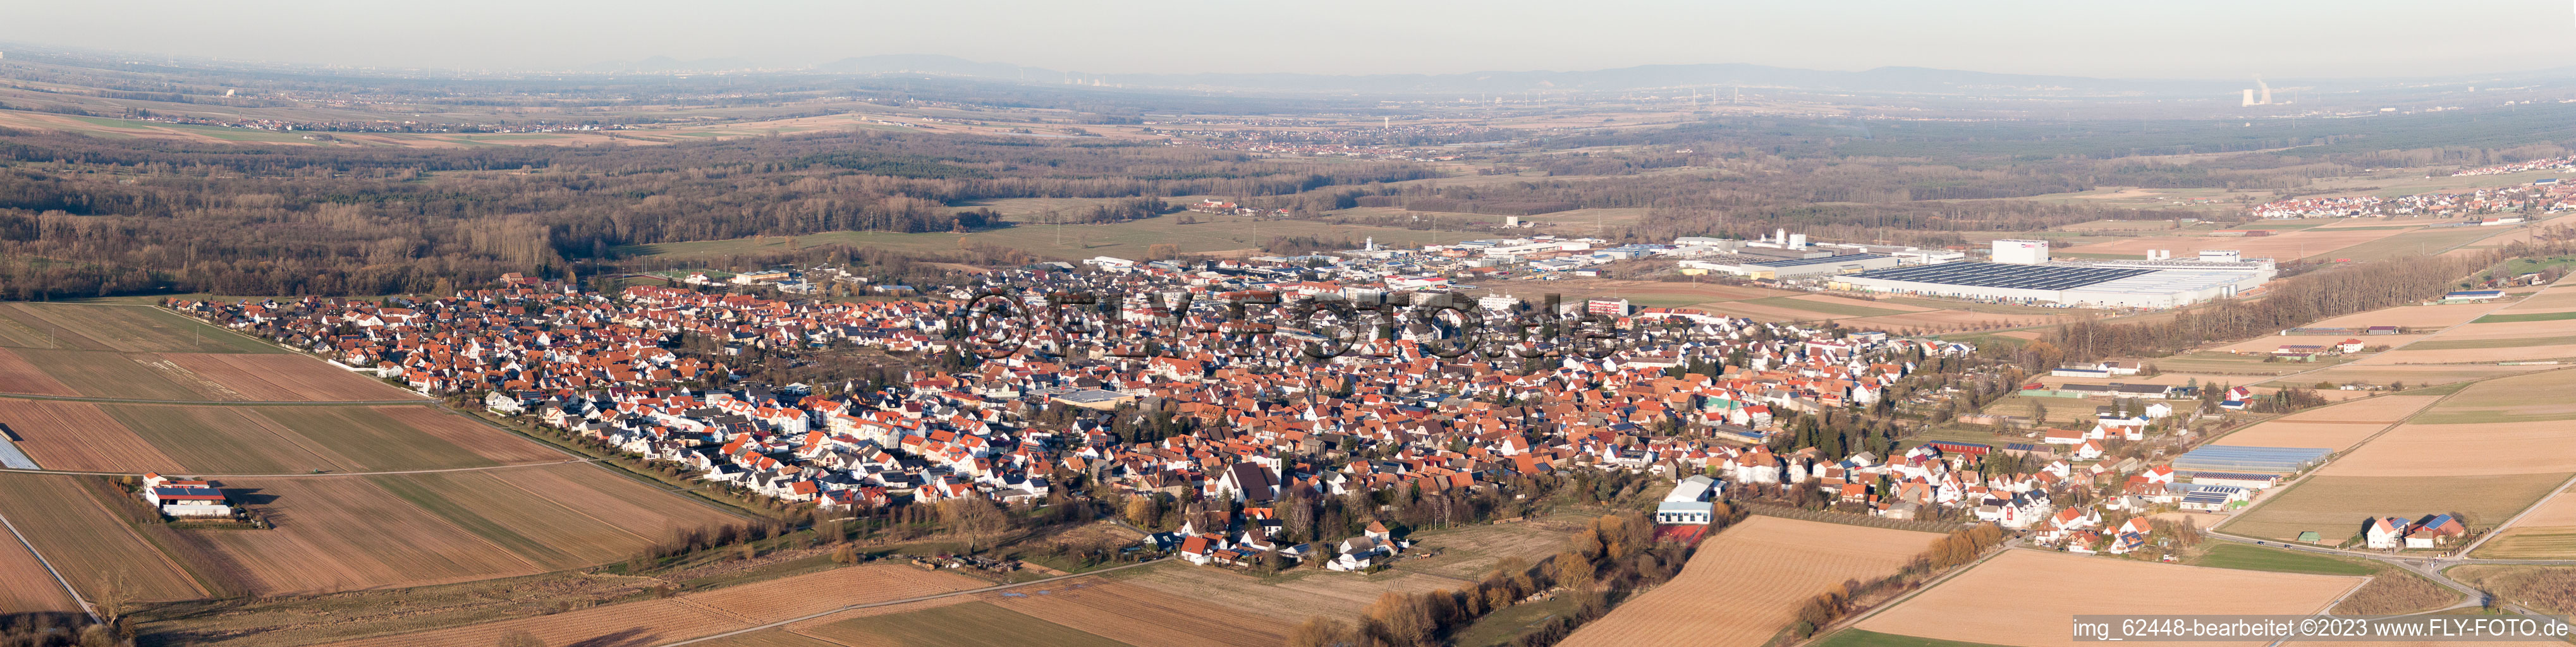 Luftaufnahme von Panorama in Offenbach an der Queich im Bundesland Rheinland-Pfalz, Deutschland